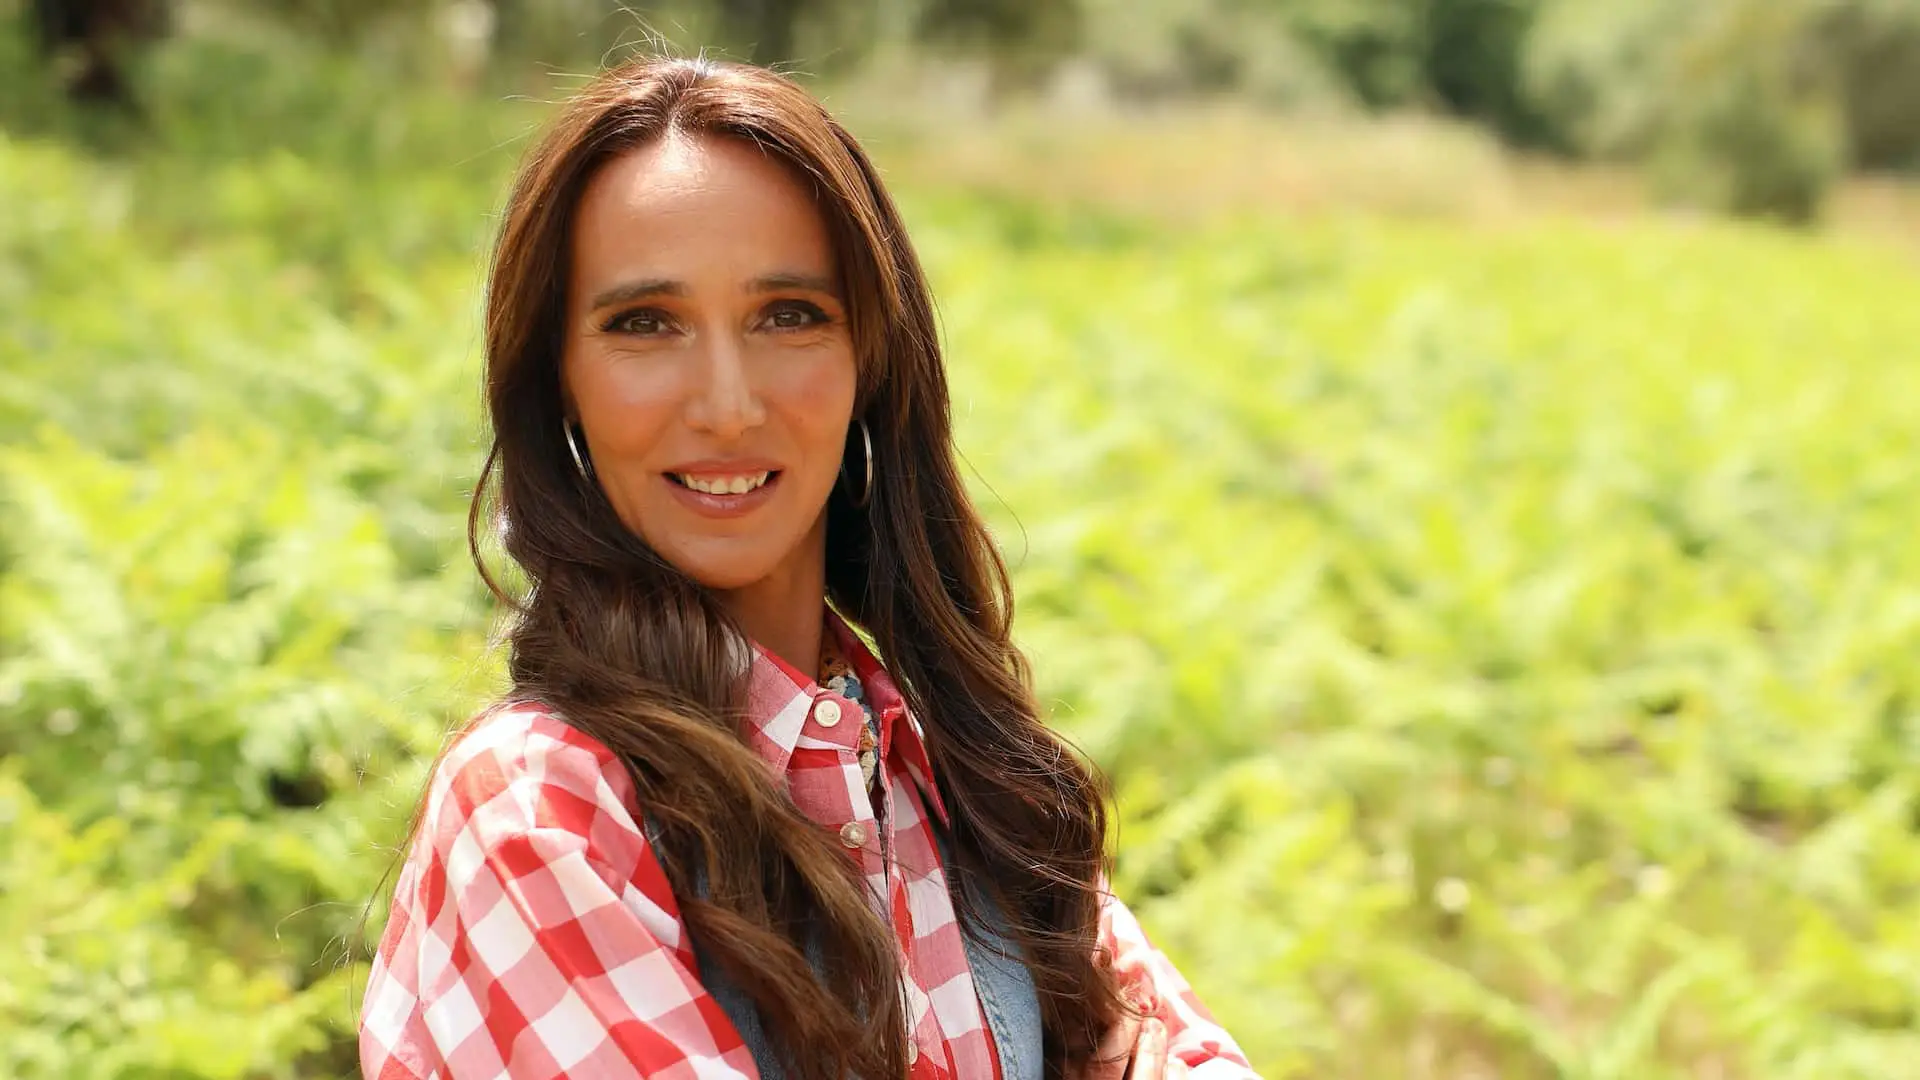 Ana Palma, Quem Quer Namorar Com O Agricultor